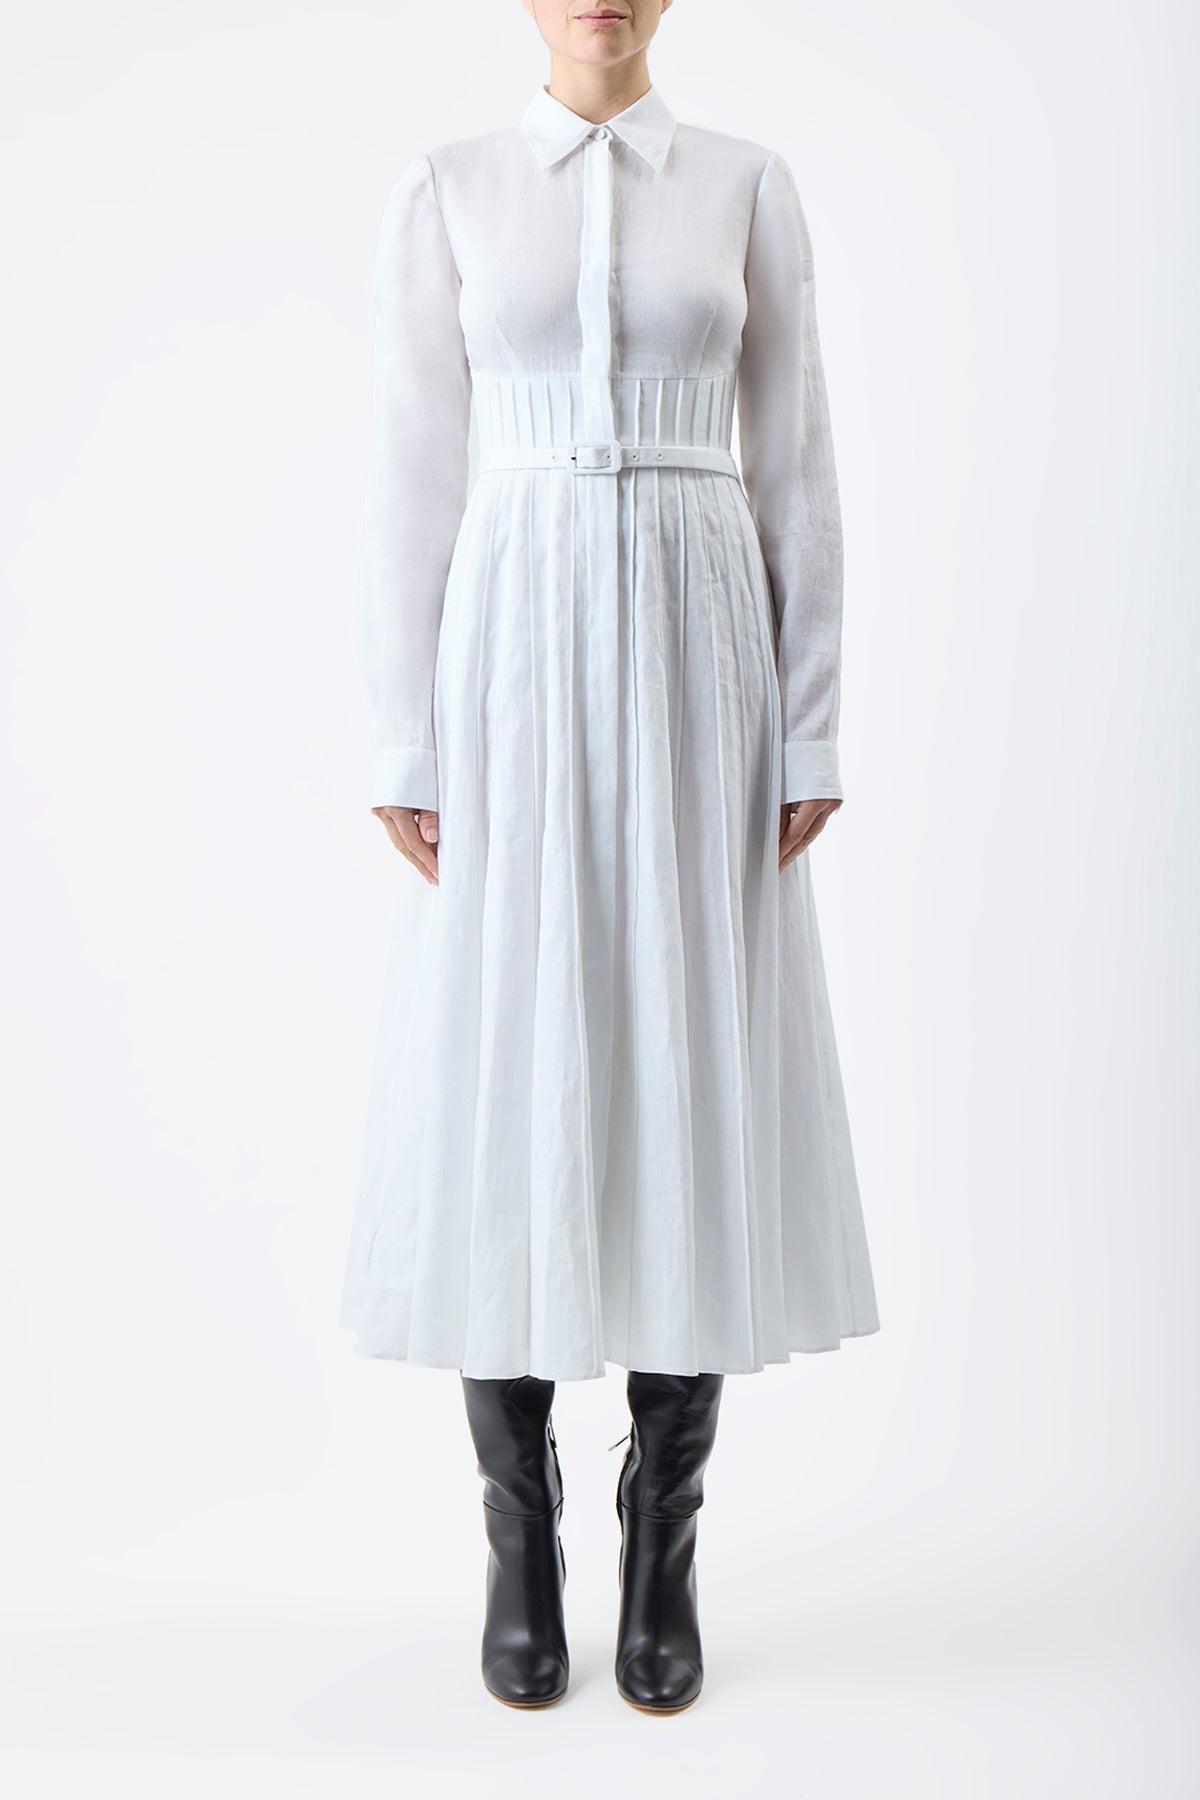 Dewi Pleated Dress in White Aloe Linen